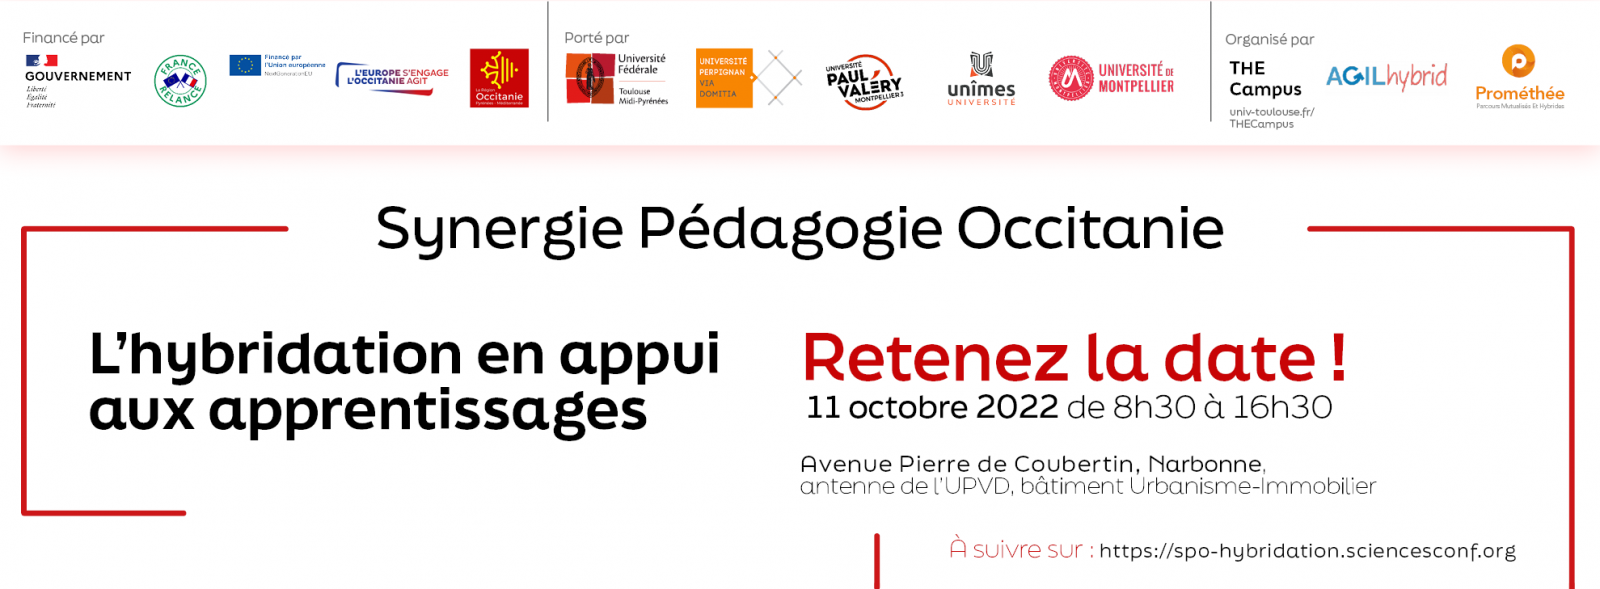 Synergie Pedagogie Occitanie